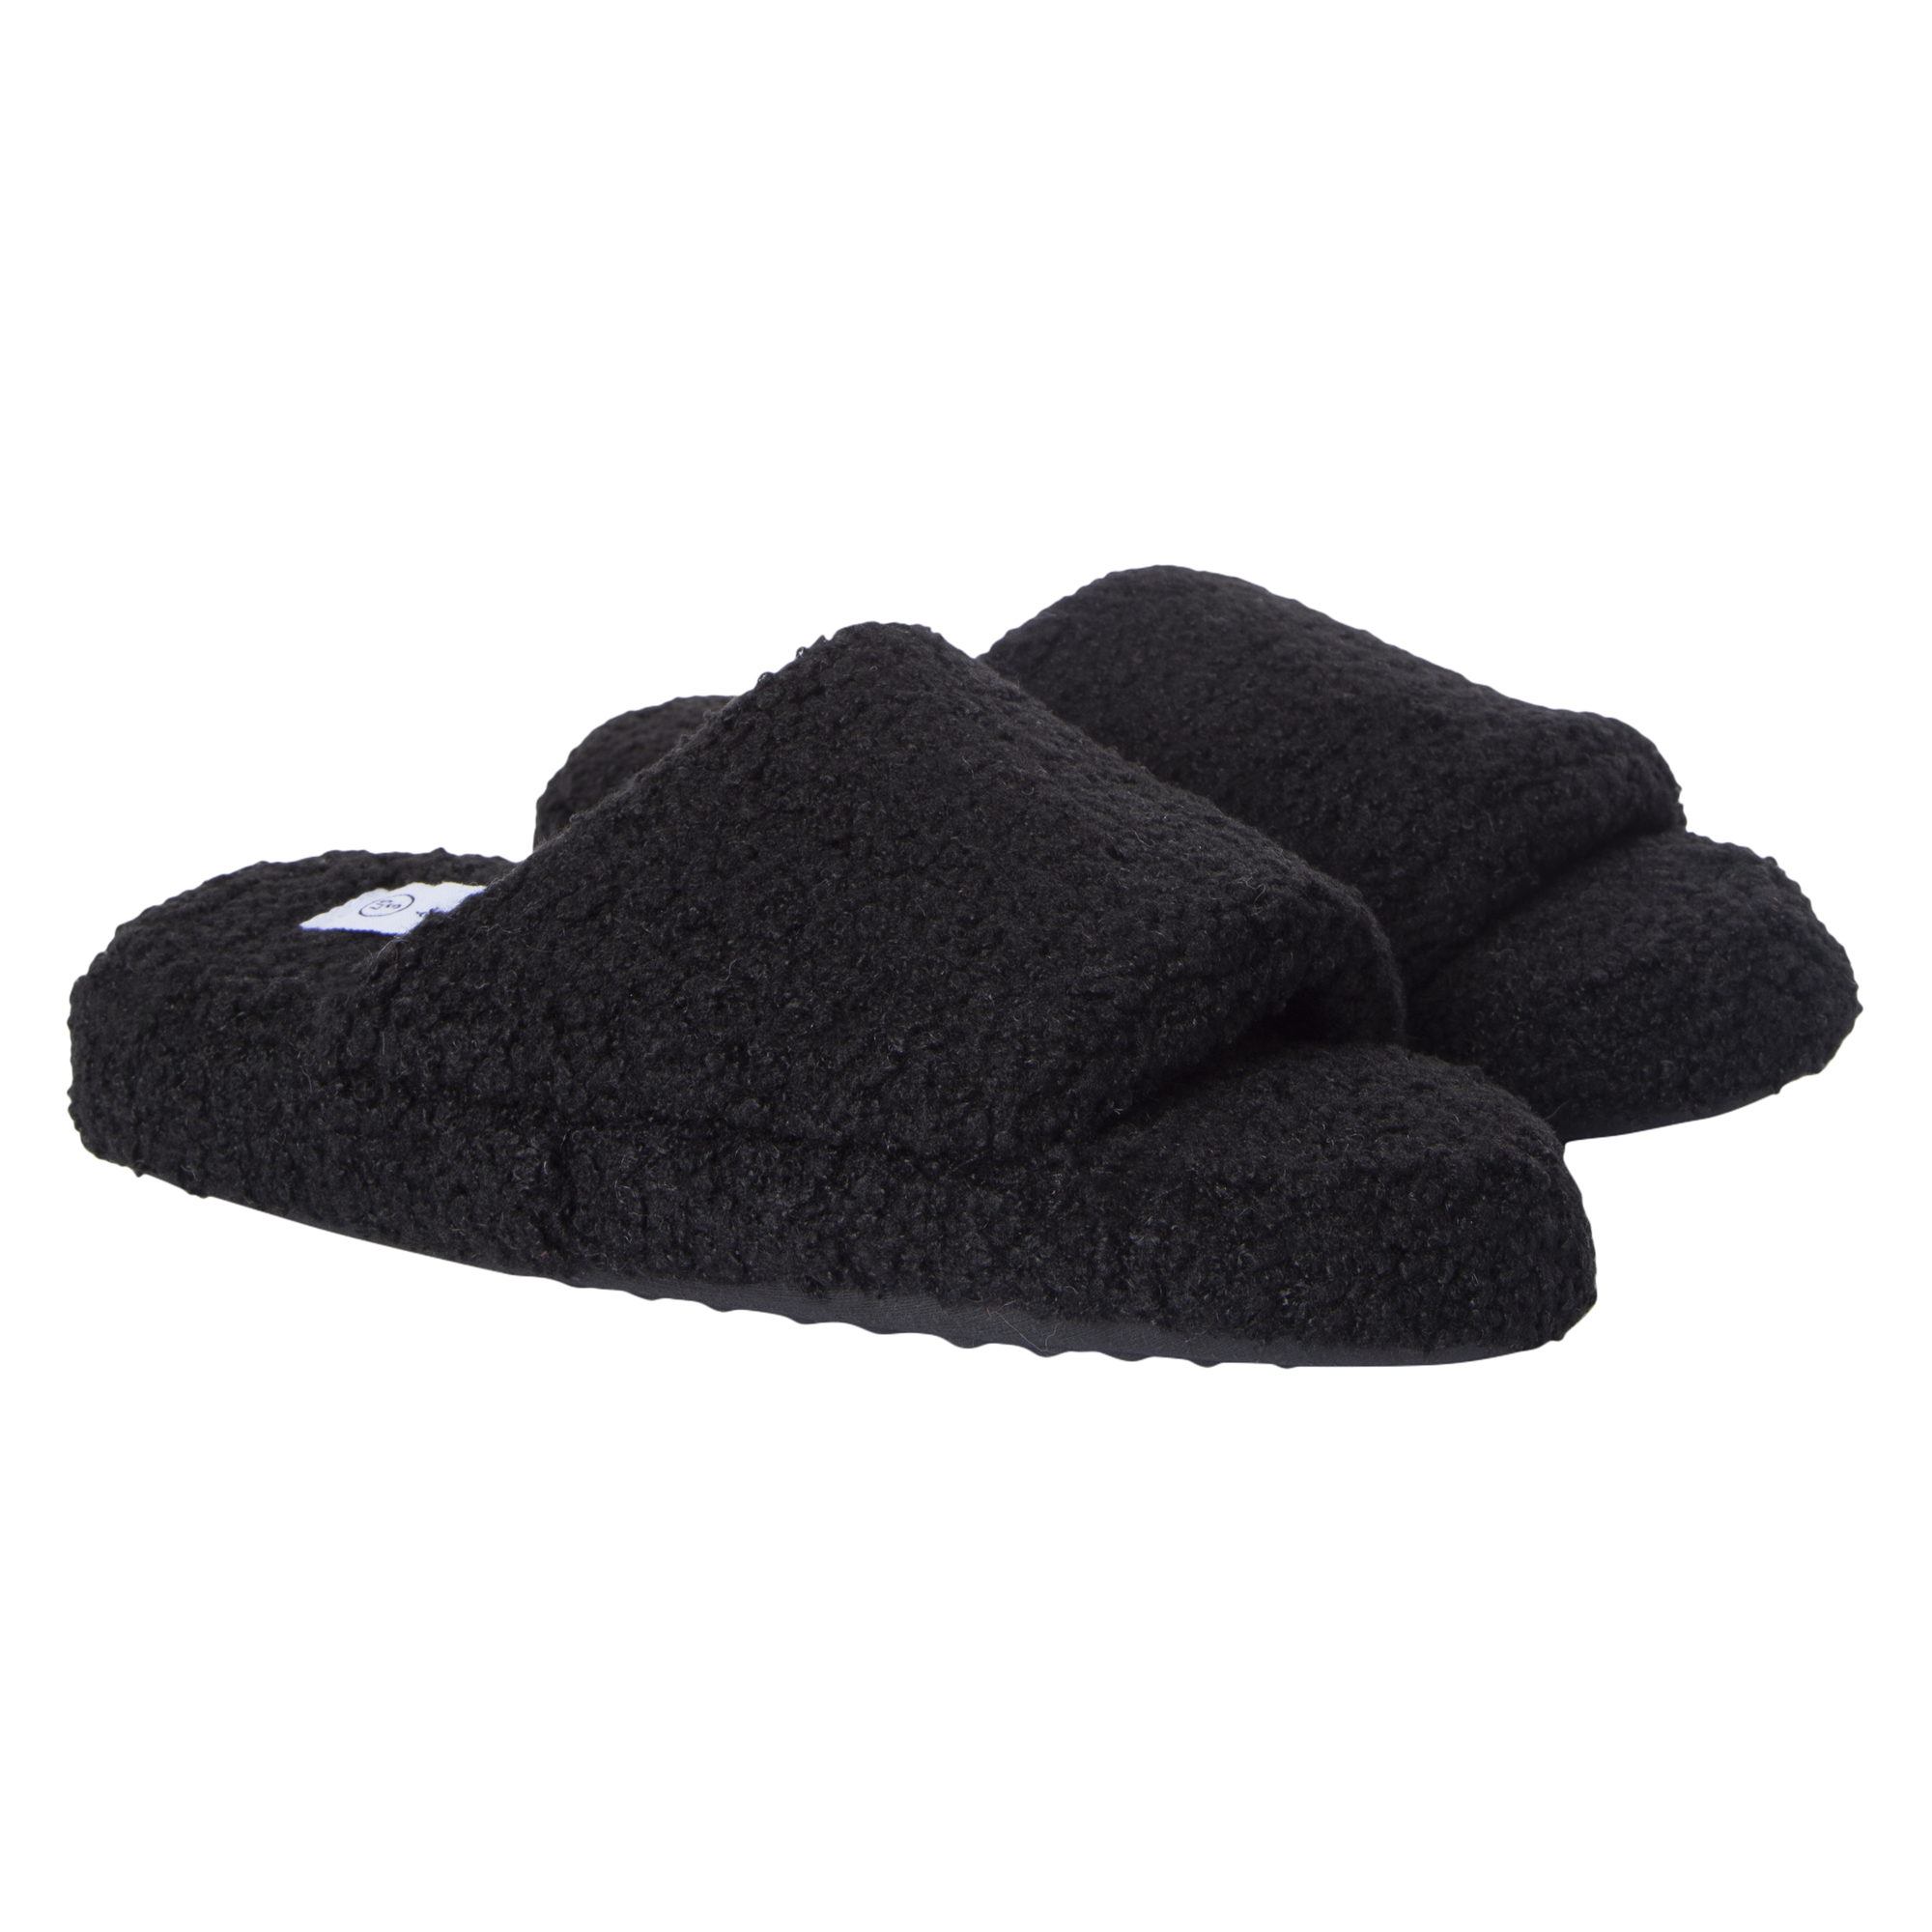 black teddy slide slippers